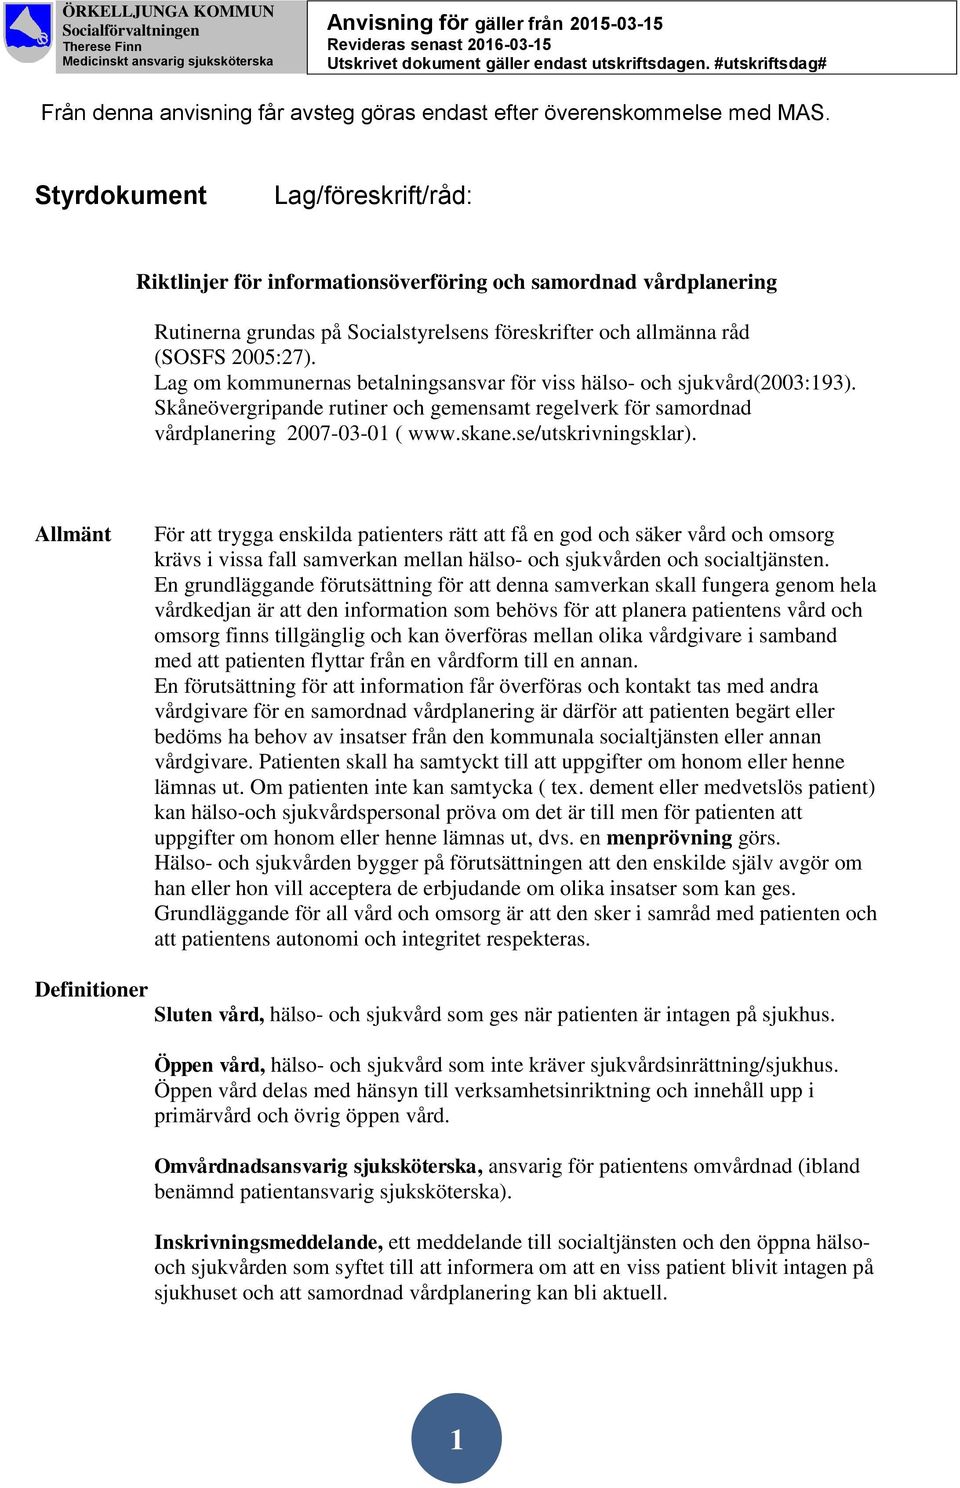 Lag om kommunernas betalningsansvar för viss hälso- och sjukvård(2003:193). Skåneövergripande rutiner och gemensamt regelverk för samordnad vårdplanering 2007-03-01 ( www.skane.se/utskrivningsklar).